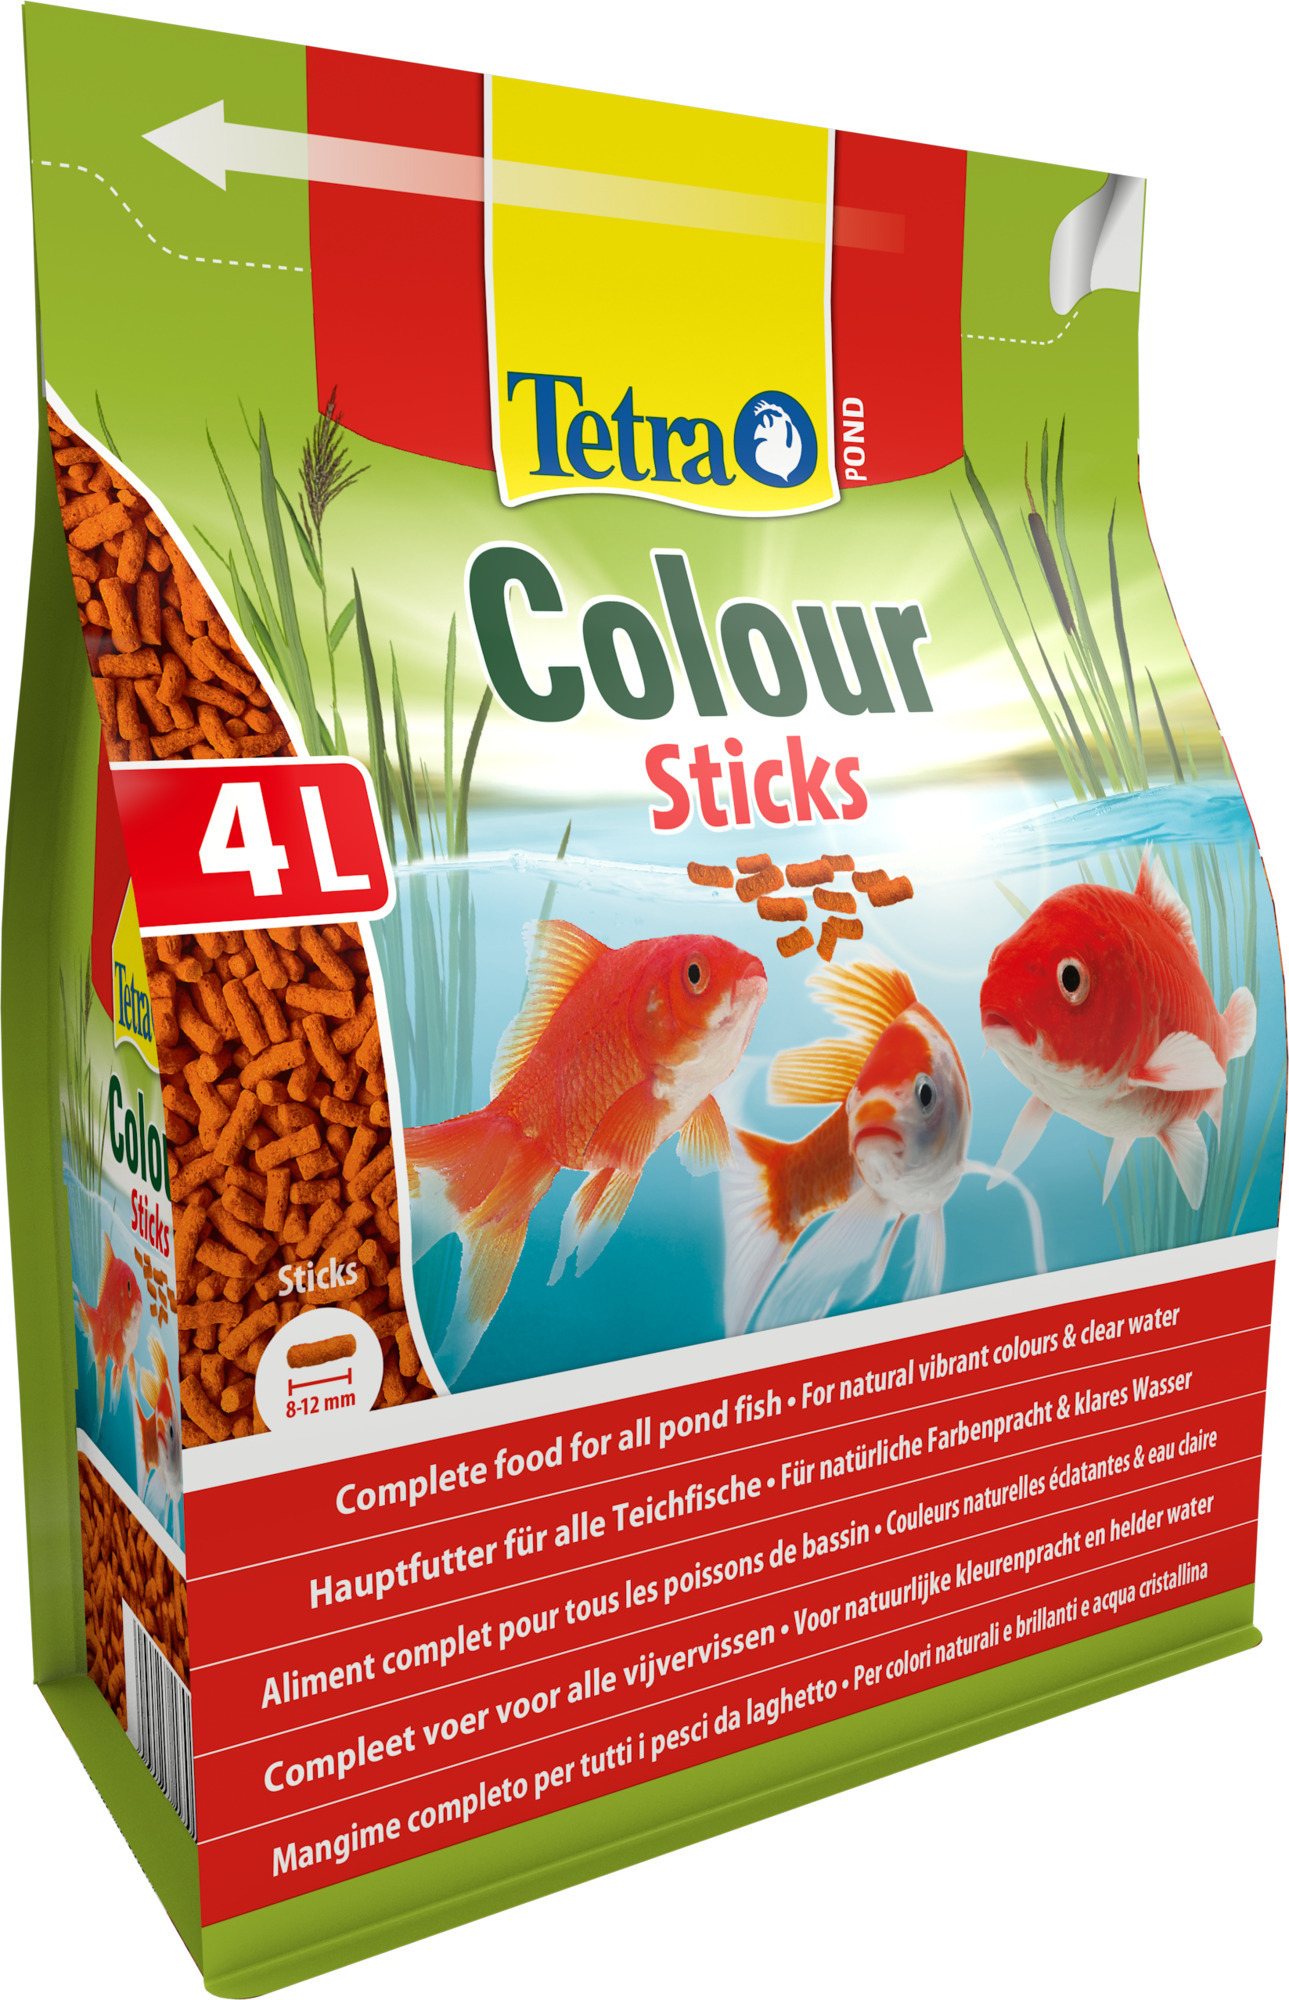 Tetra Pond Colour Sticks 4 Liter